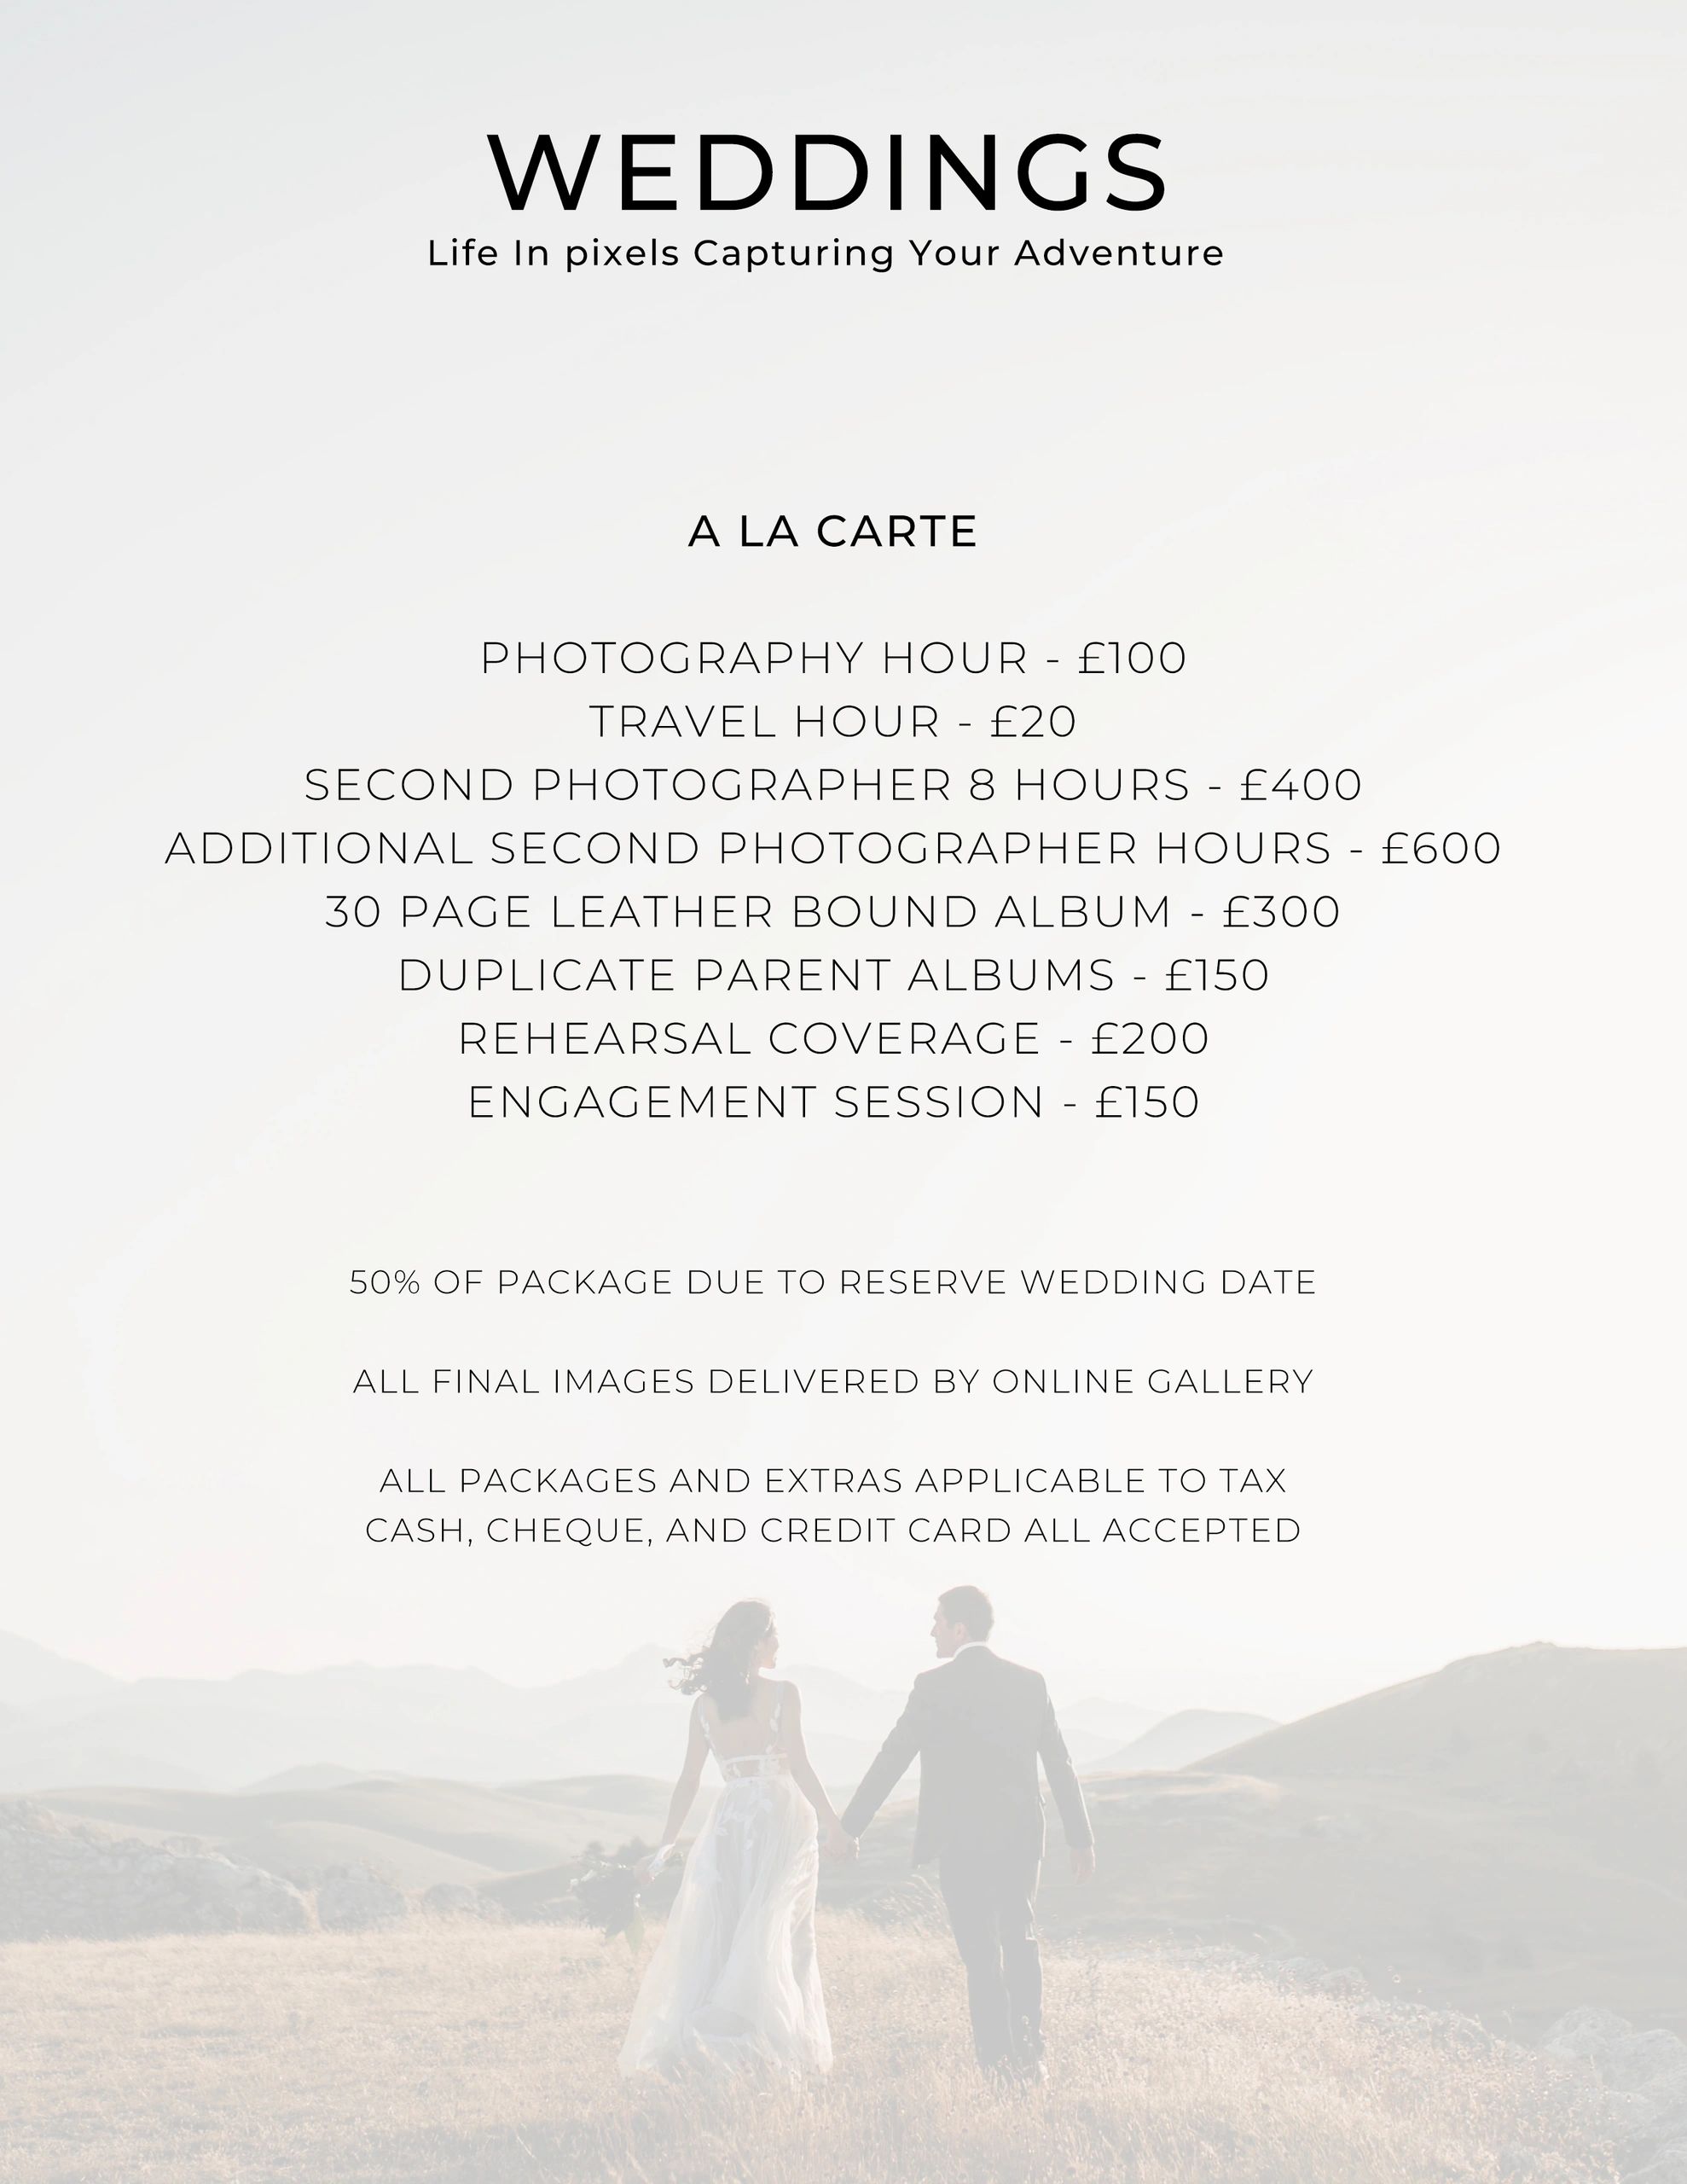 Life in Pixels Capturing Your Adventure - Wedding Photographer